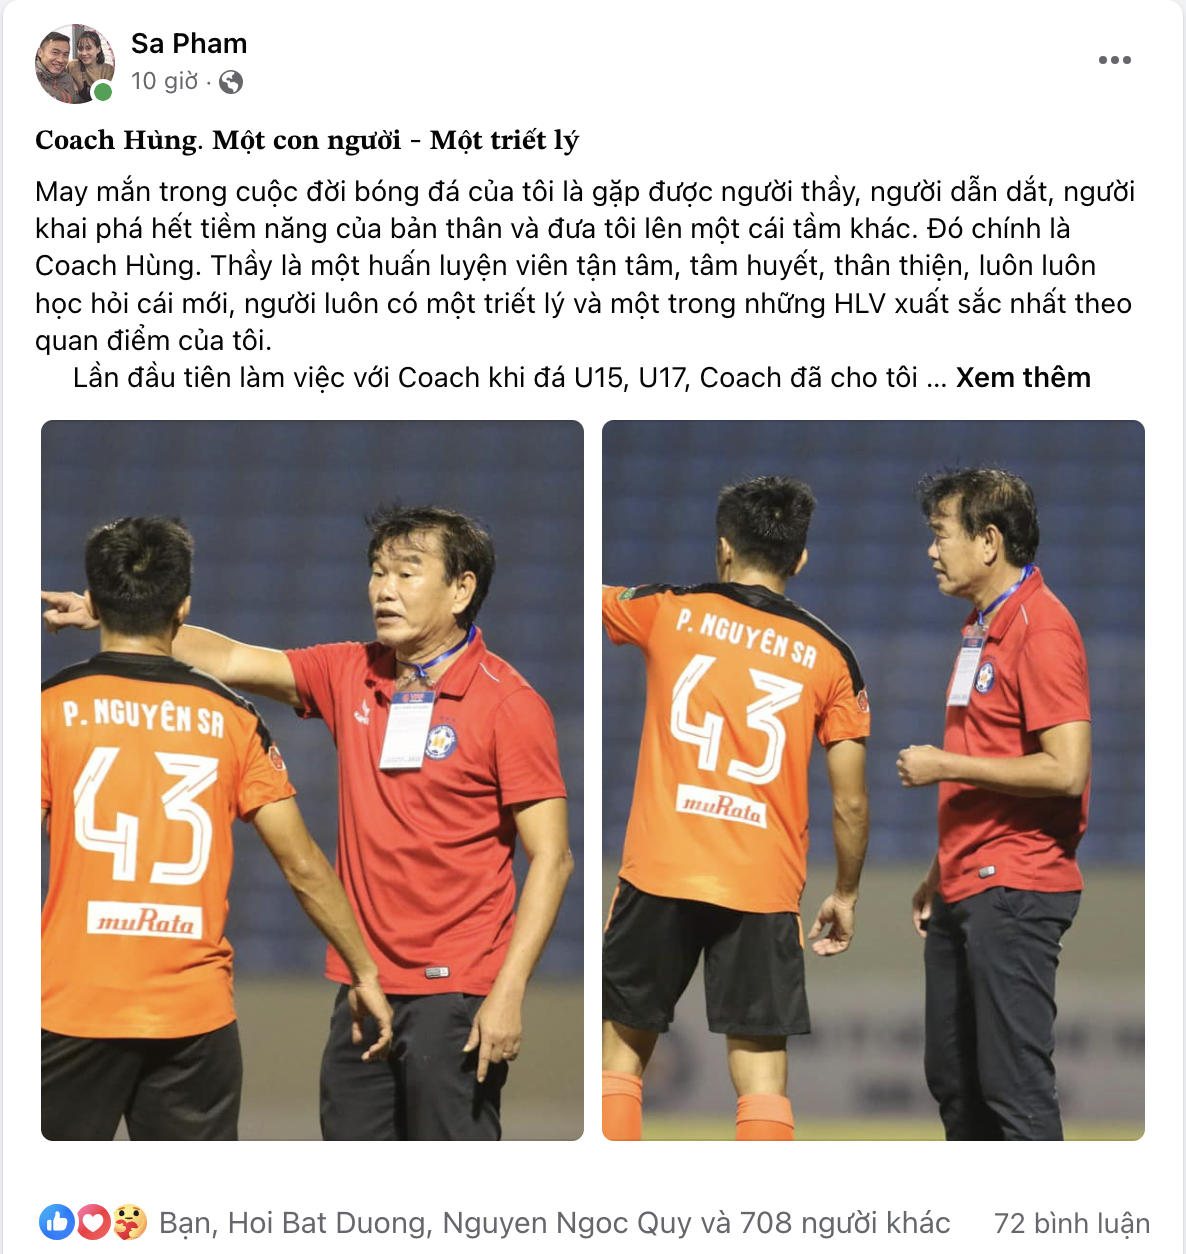 Đoạn chia sẻ đầy xúc động mà tiền vệ Nguyên Sa gửi đến HLV Phan Thanh Hùng